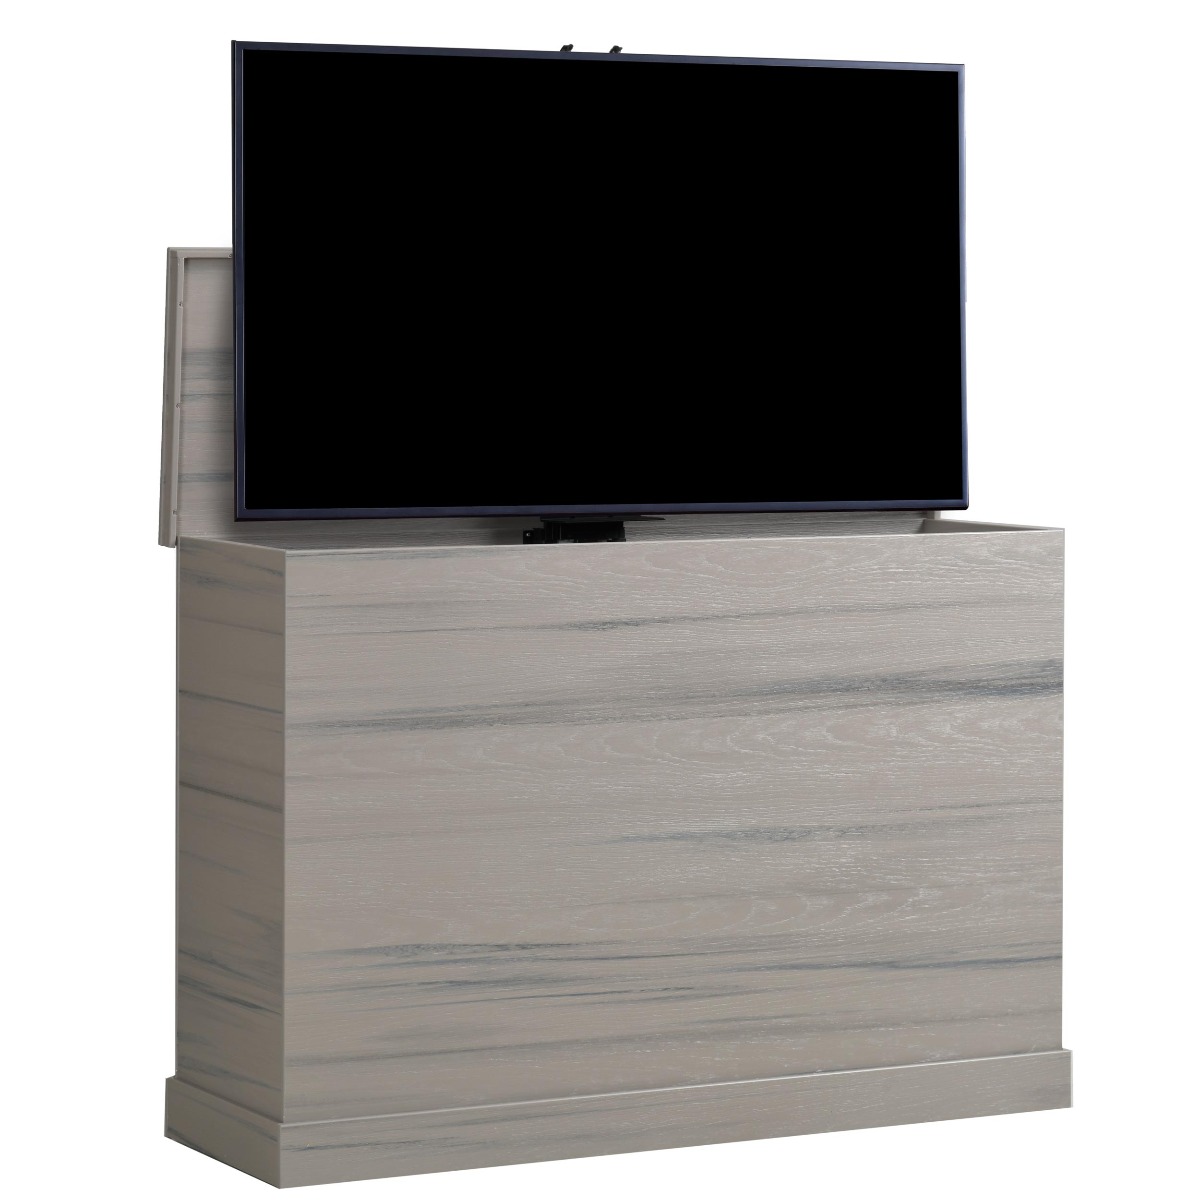 Premium Tv Lift Cabinets At 50 Off Tvliftcabinet Com